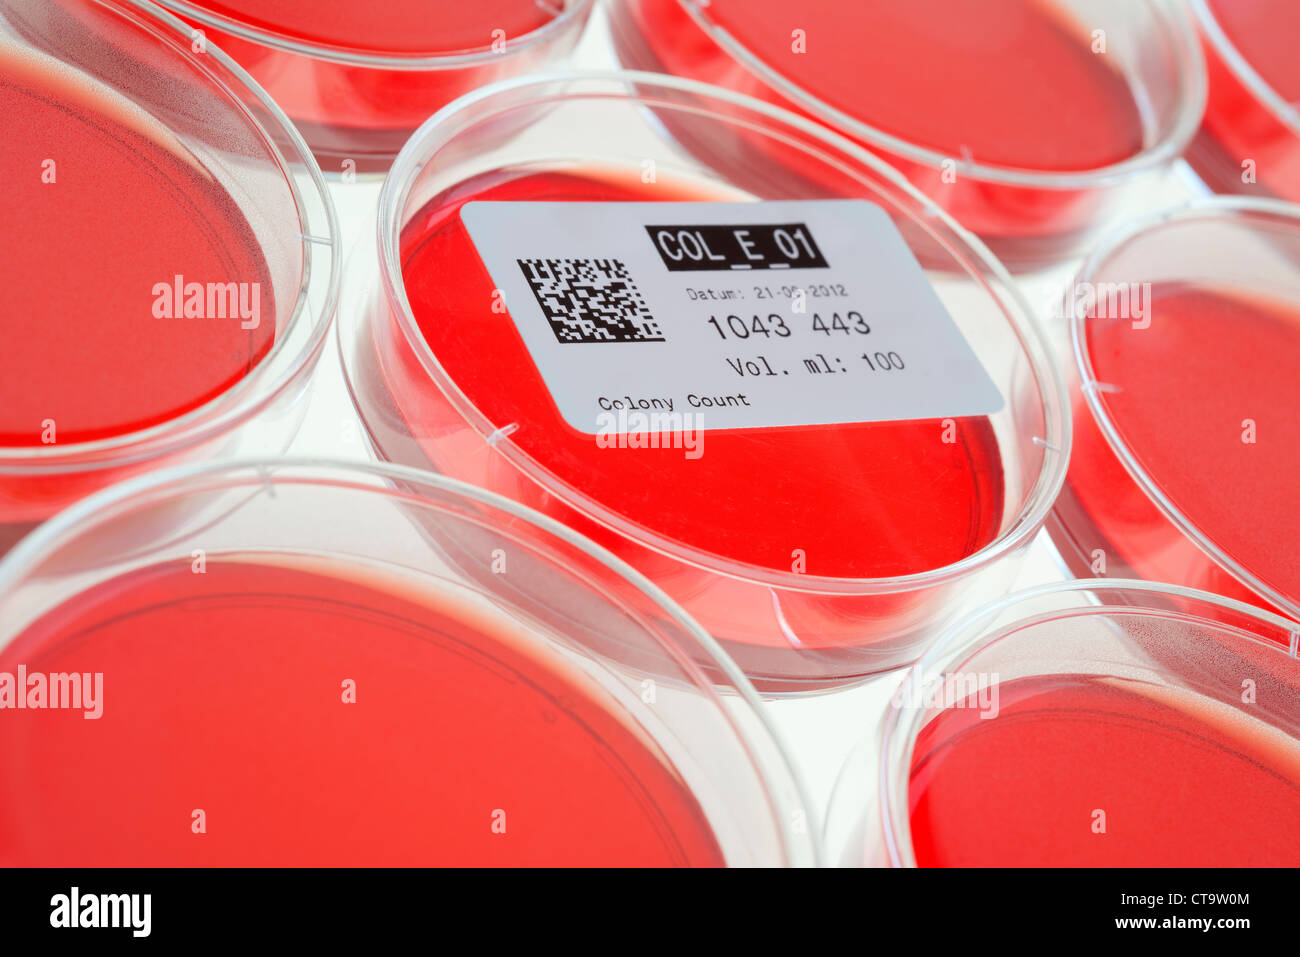 Piastre di Petri per ispezionare i campioni sulla presenza di batteri coliformi. Foto Stock